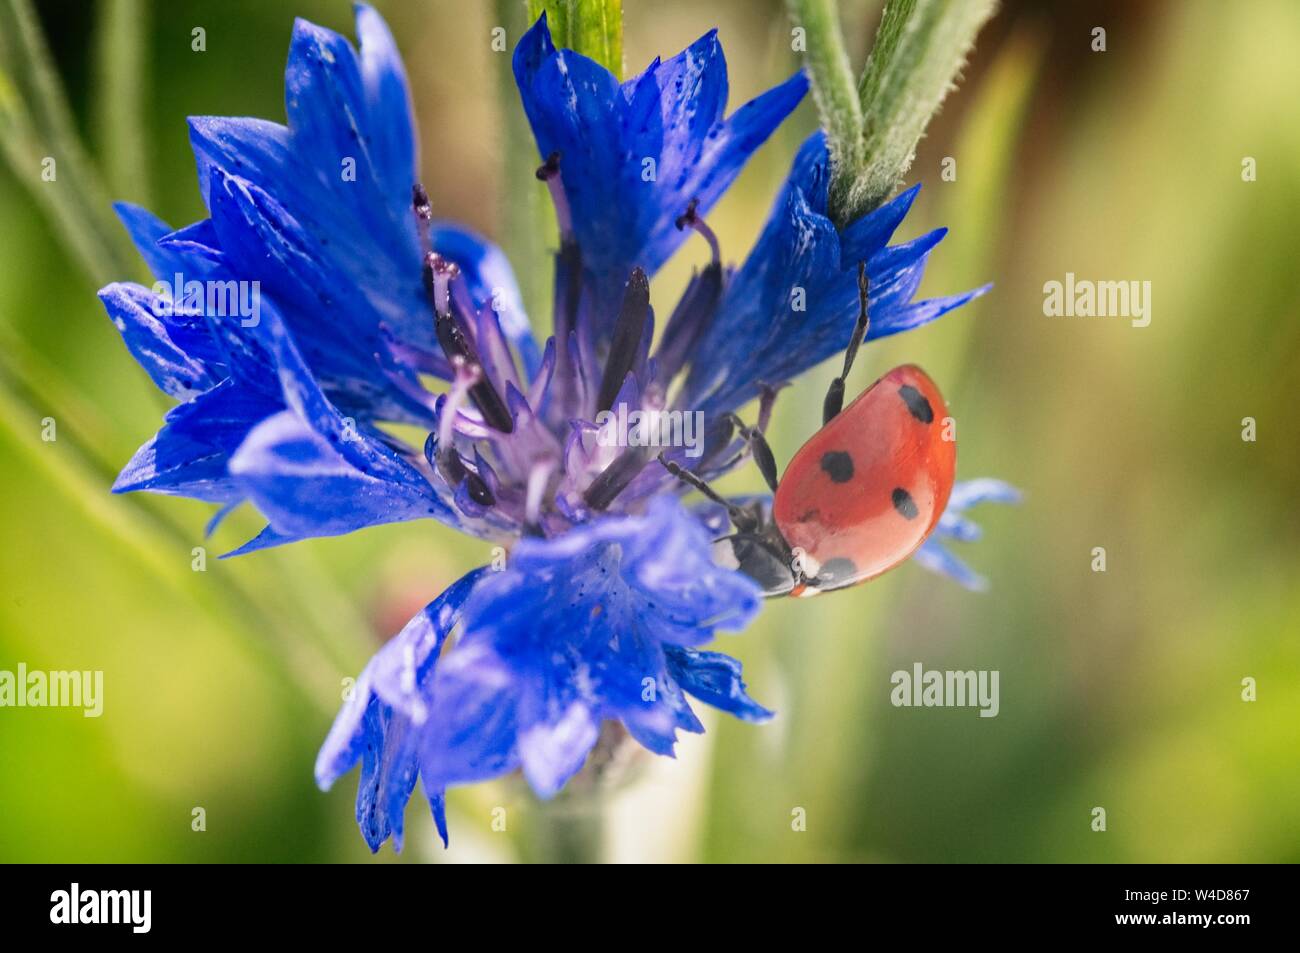 ladybug close up on flower Stock Photo